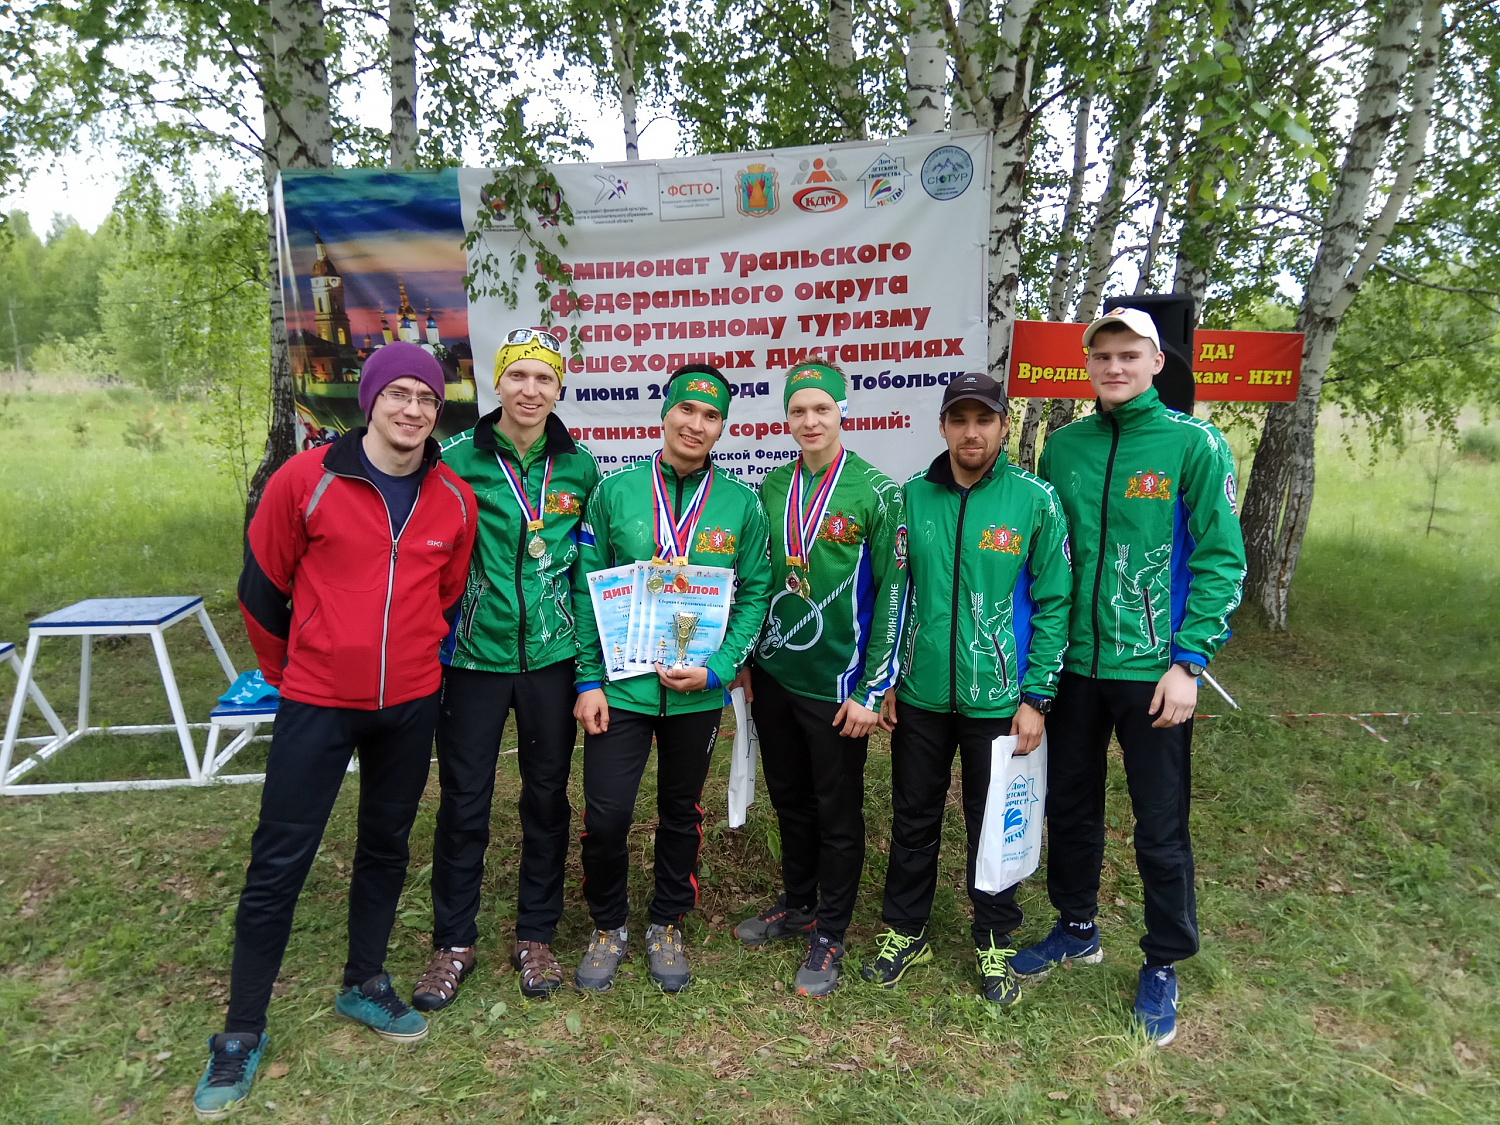 14-17 июня в Тобольске прошёл Чемпионат Уральского Федерального округа 